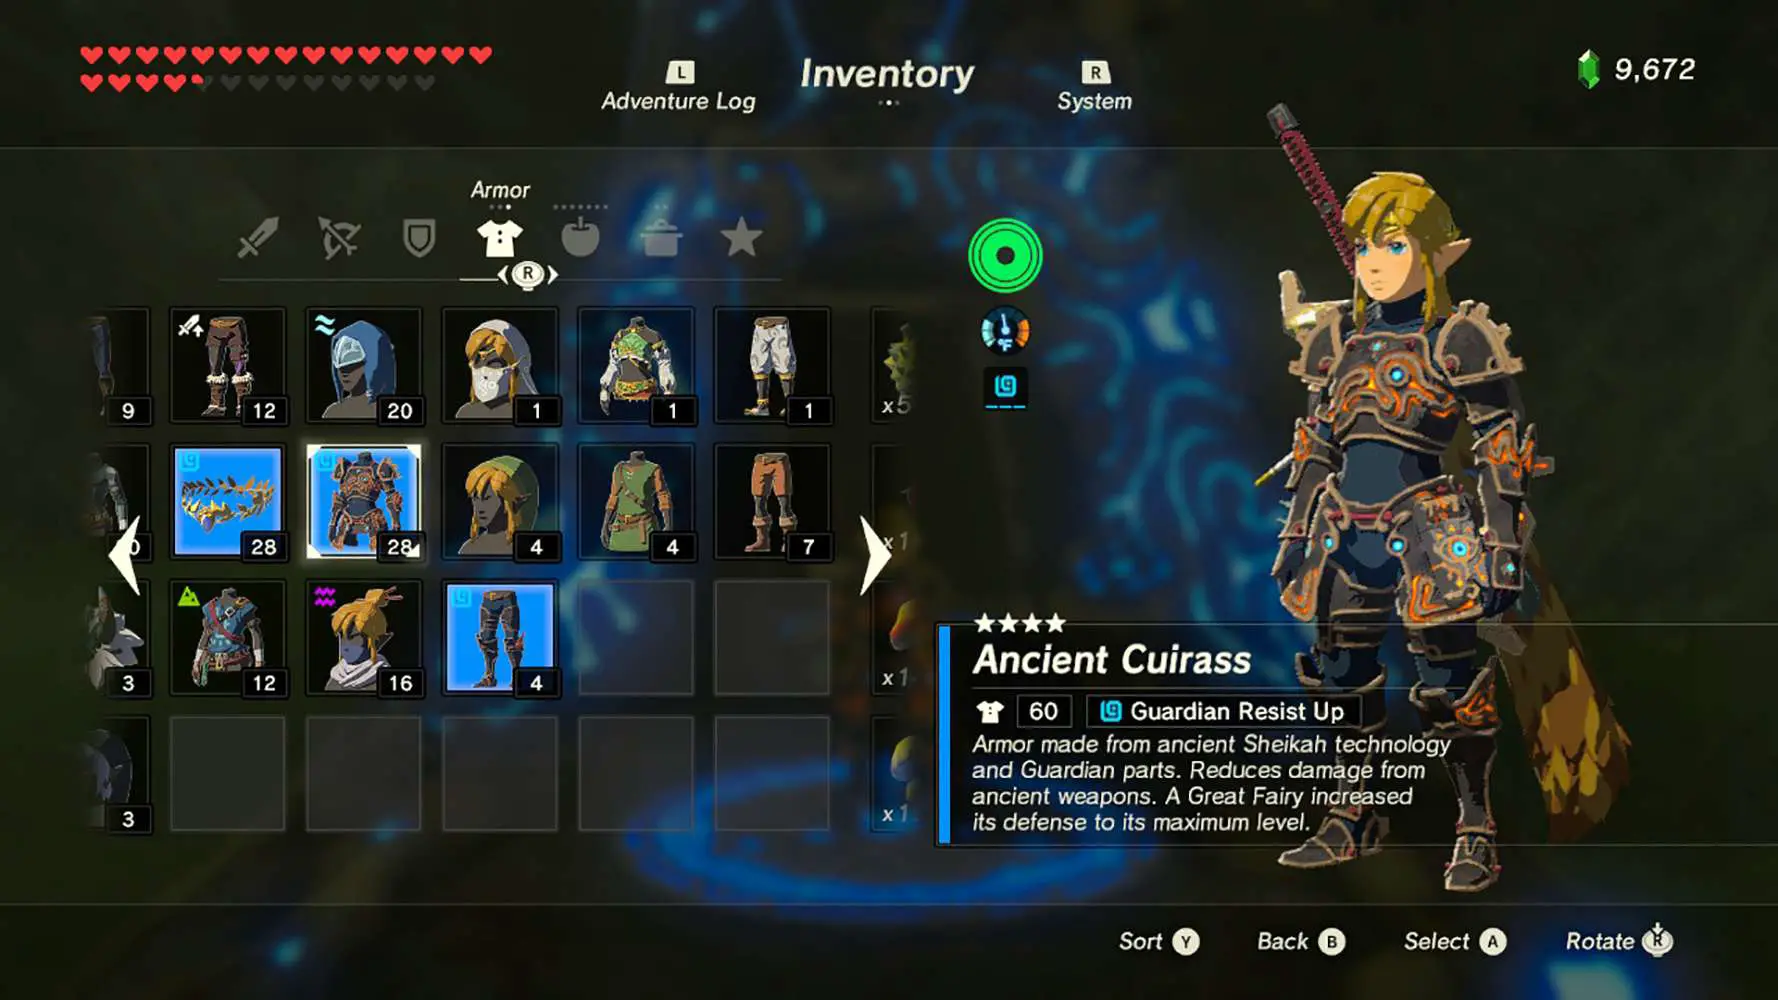 Captura de tela do inventor de Breath of the Wild mostrando uma armadura antiga